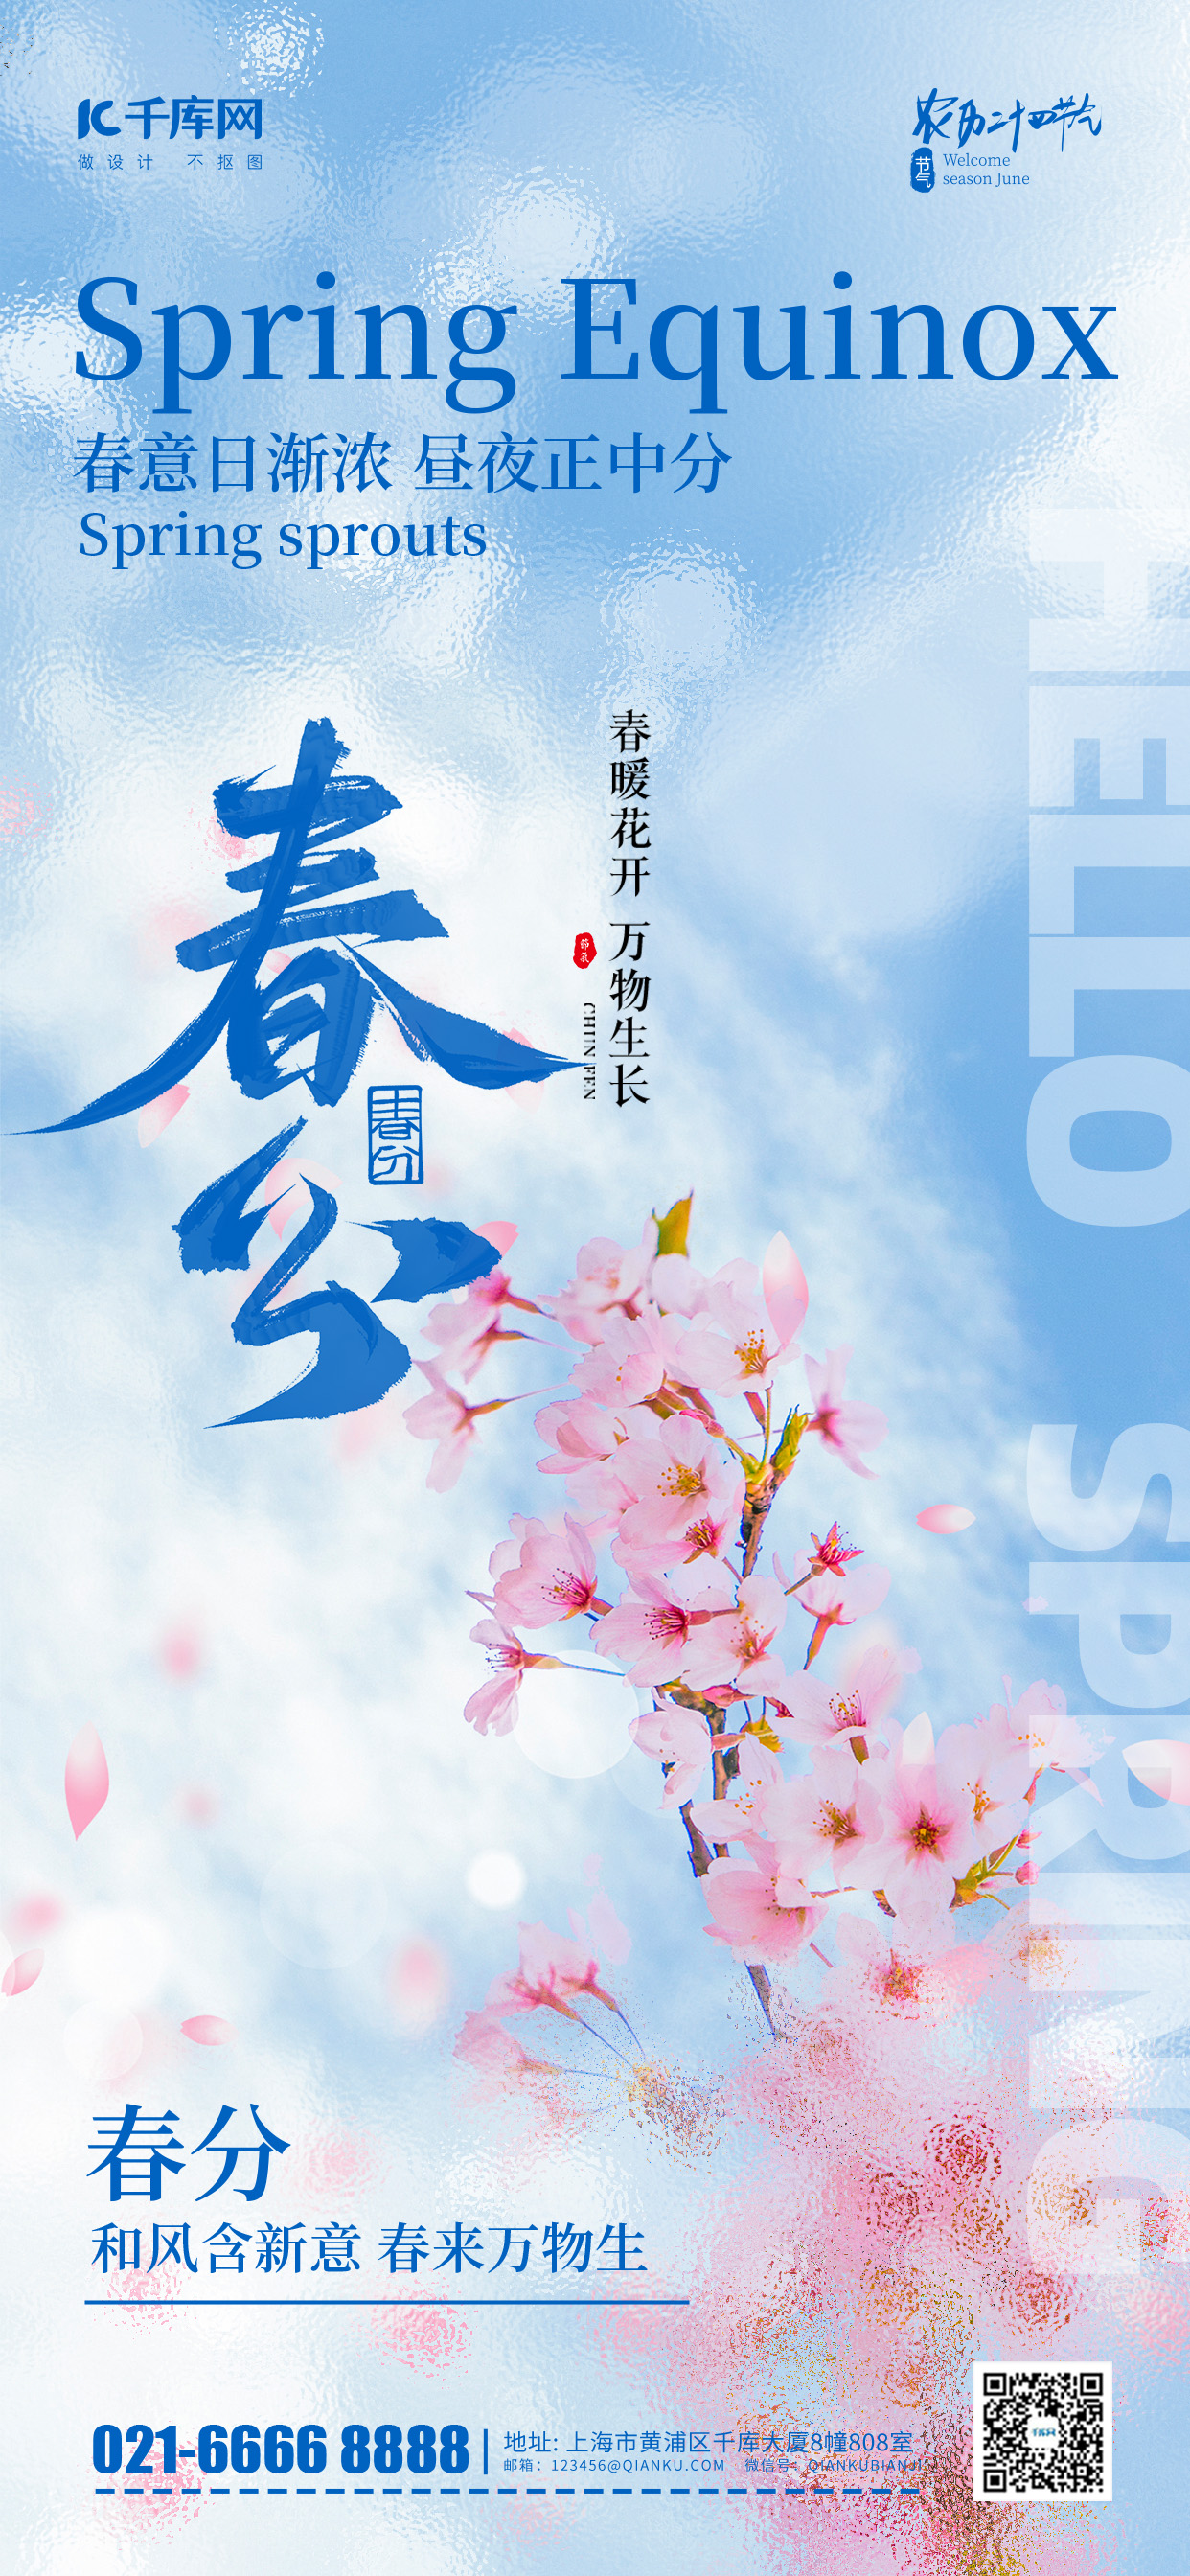 春分节气问候祝福蓝色摄影风长图海报宣传海报素材图片